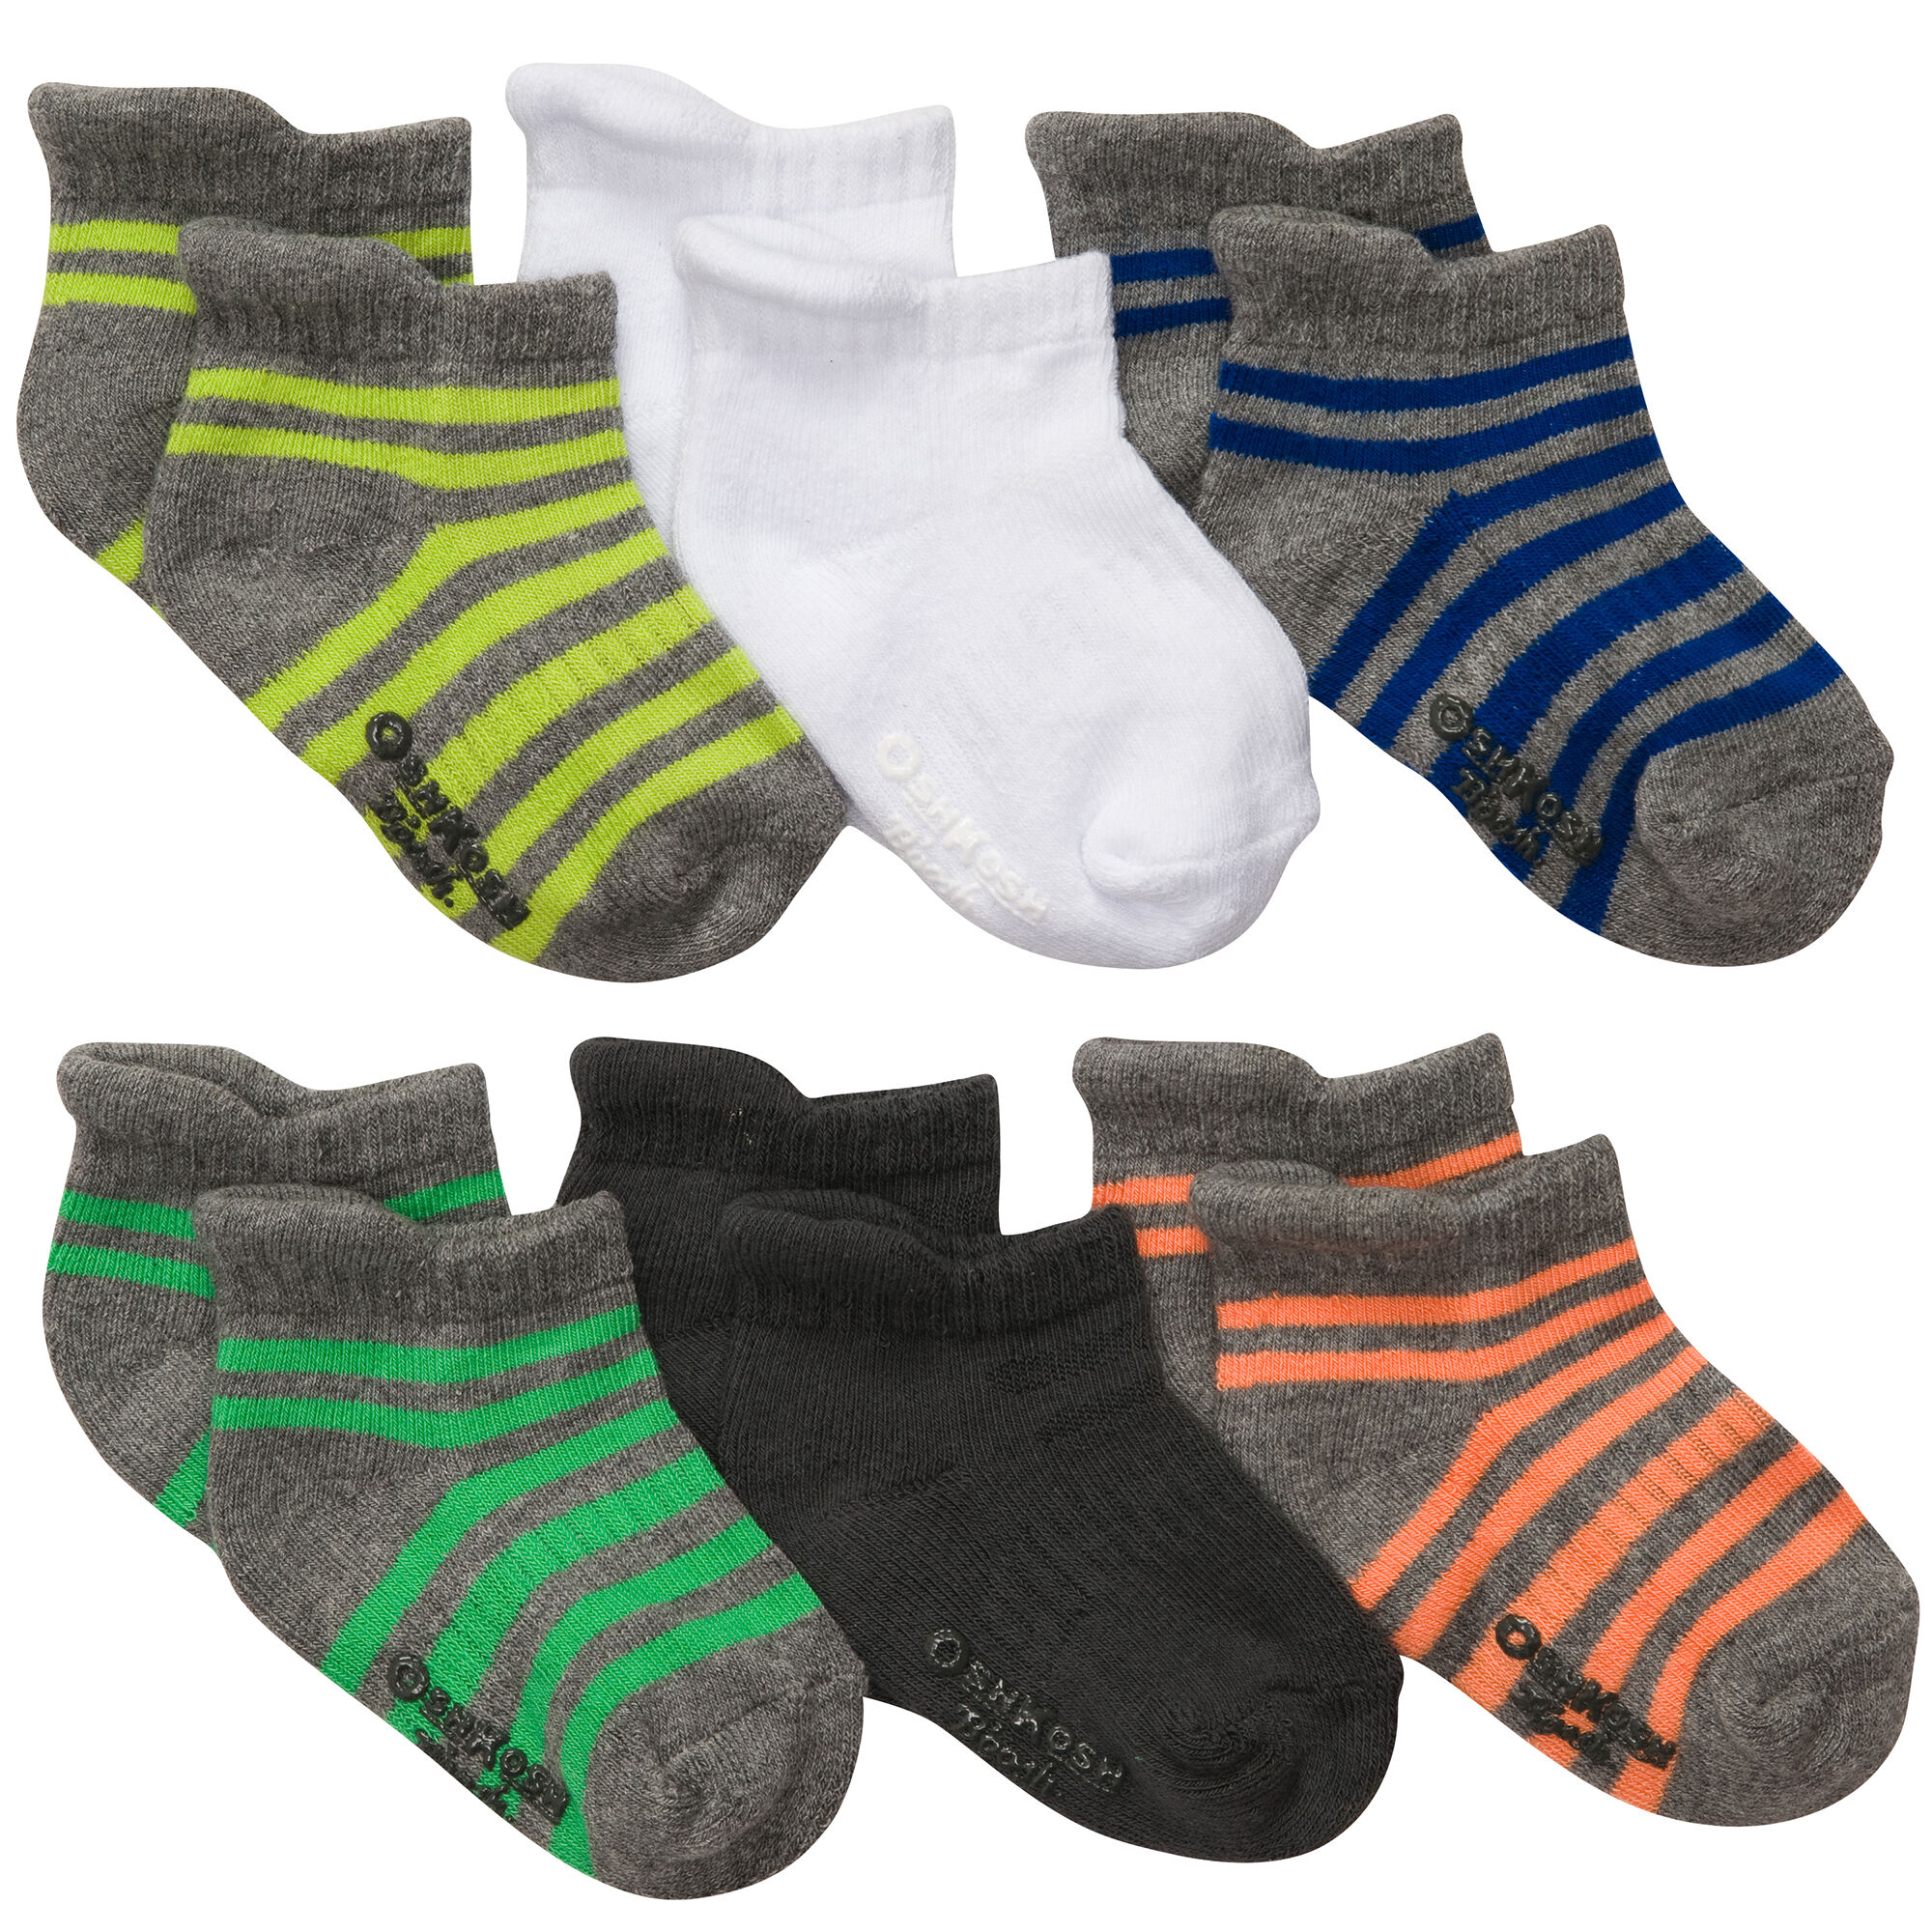 Baby Boy 6-Pack Ankle Socks | OshKosh.com